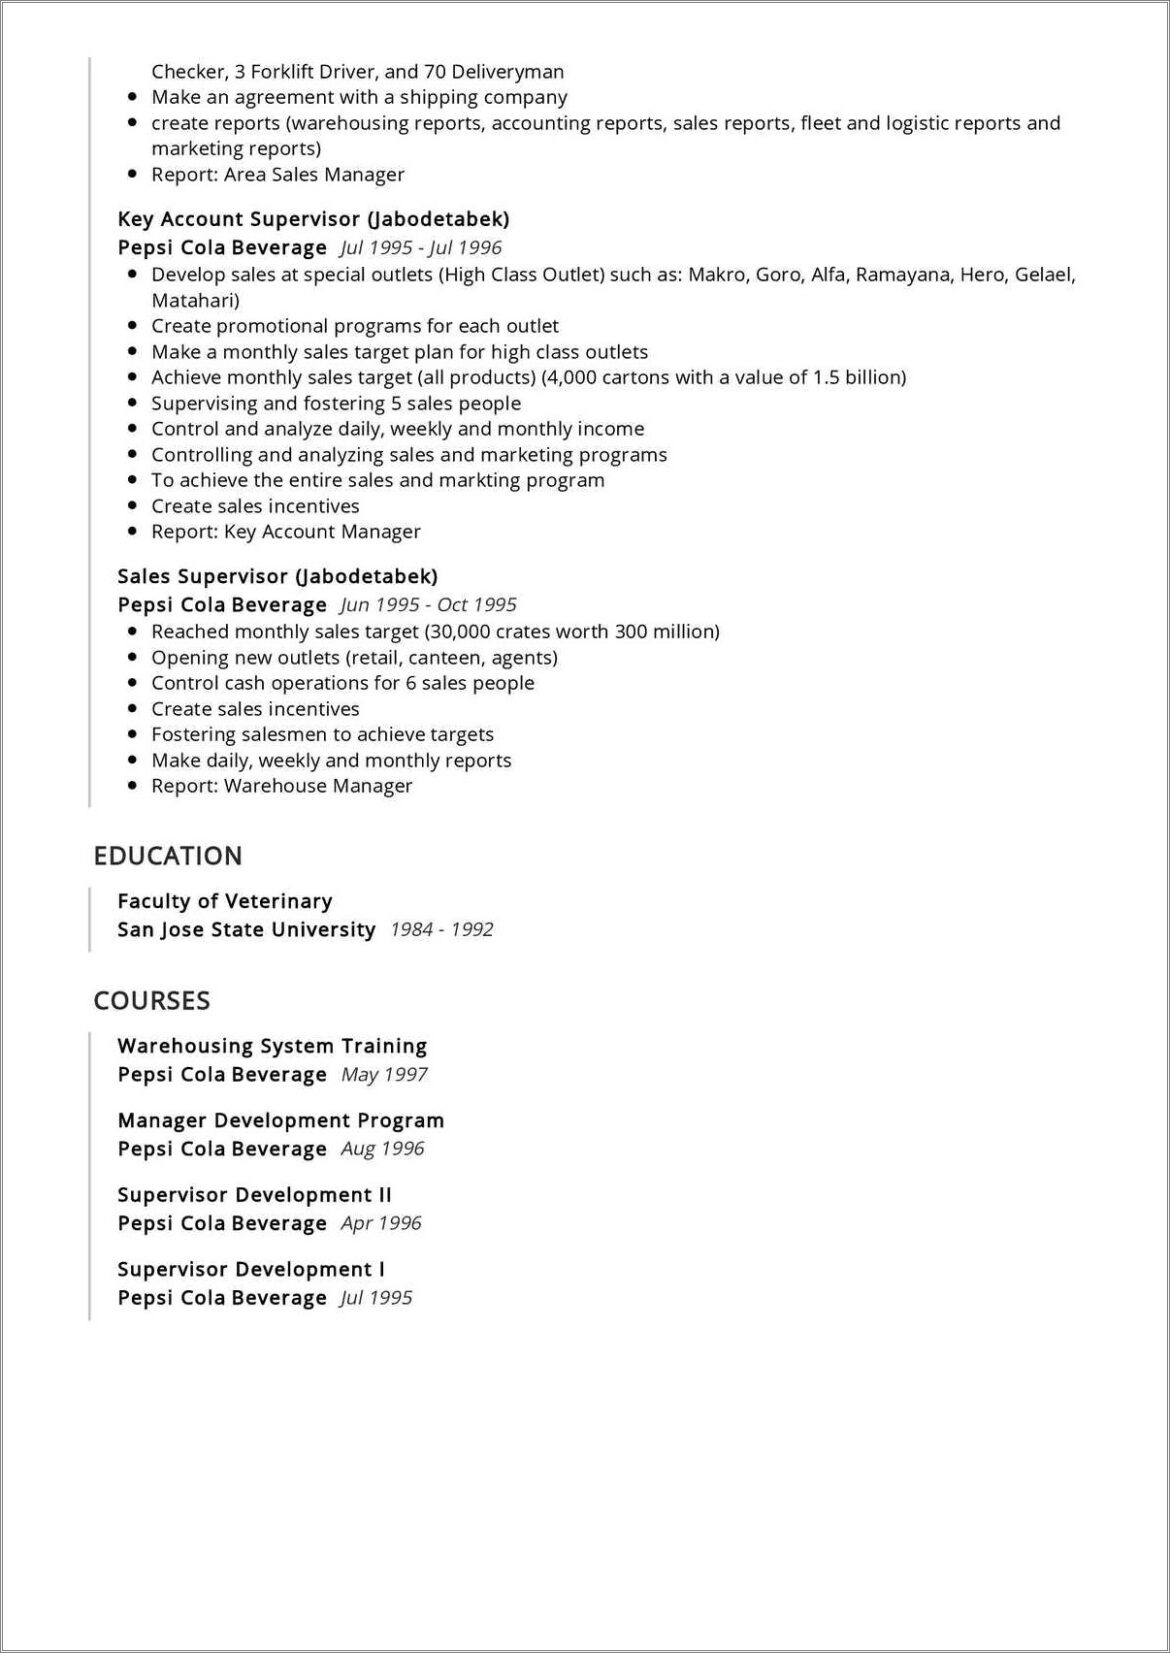 Sample Target Resume For Marketing Manager